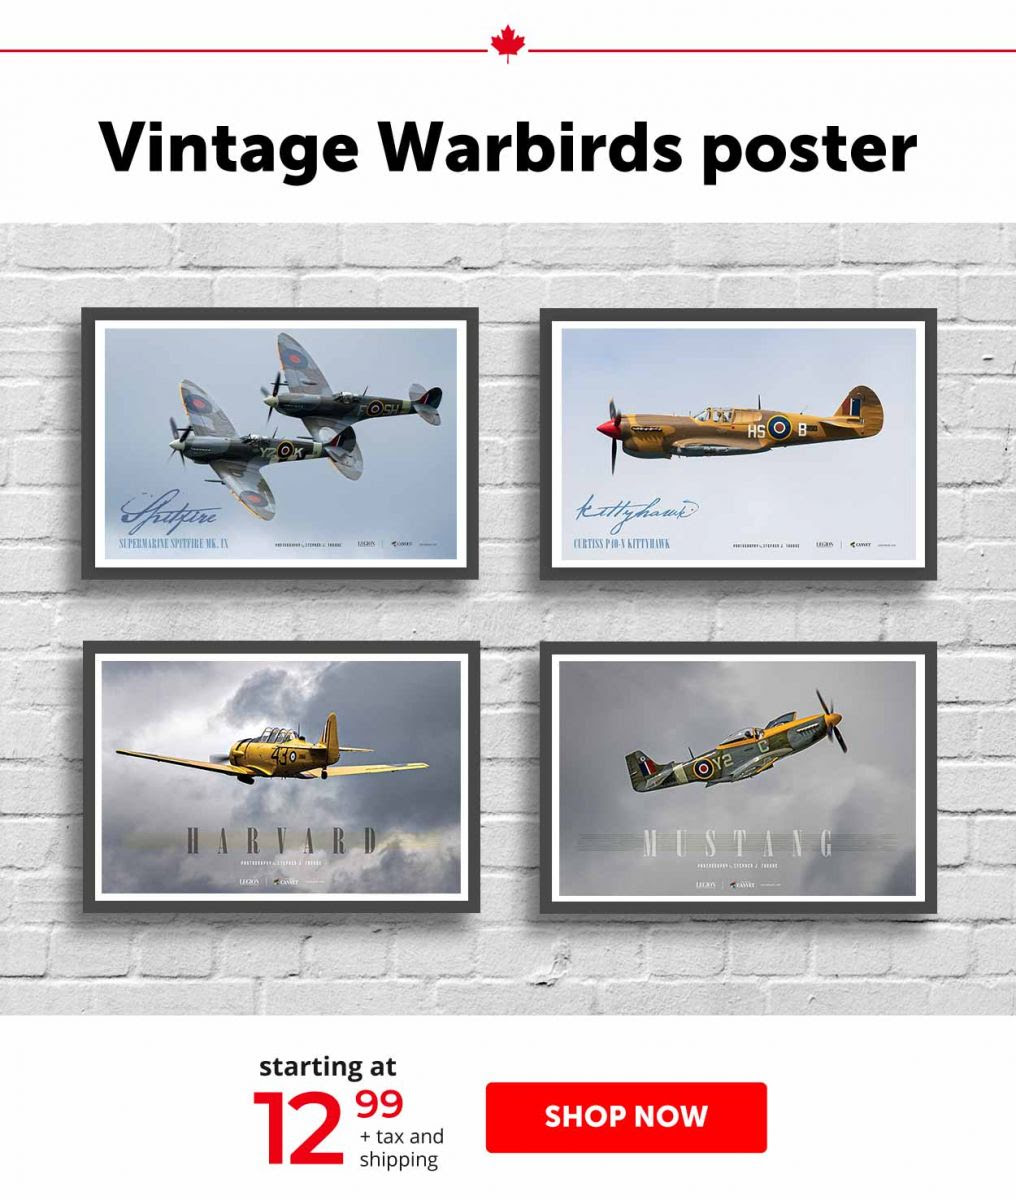  Vintage Warbirds poster